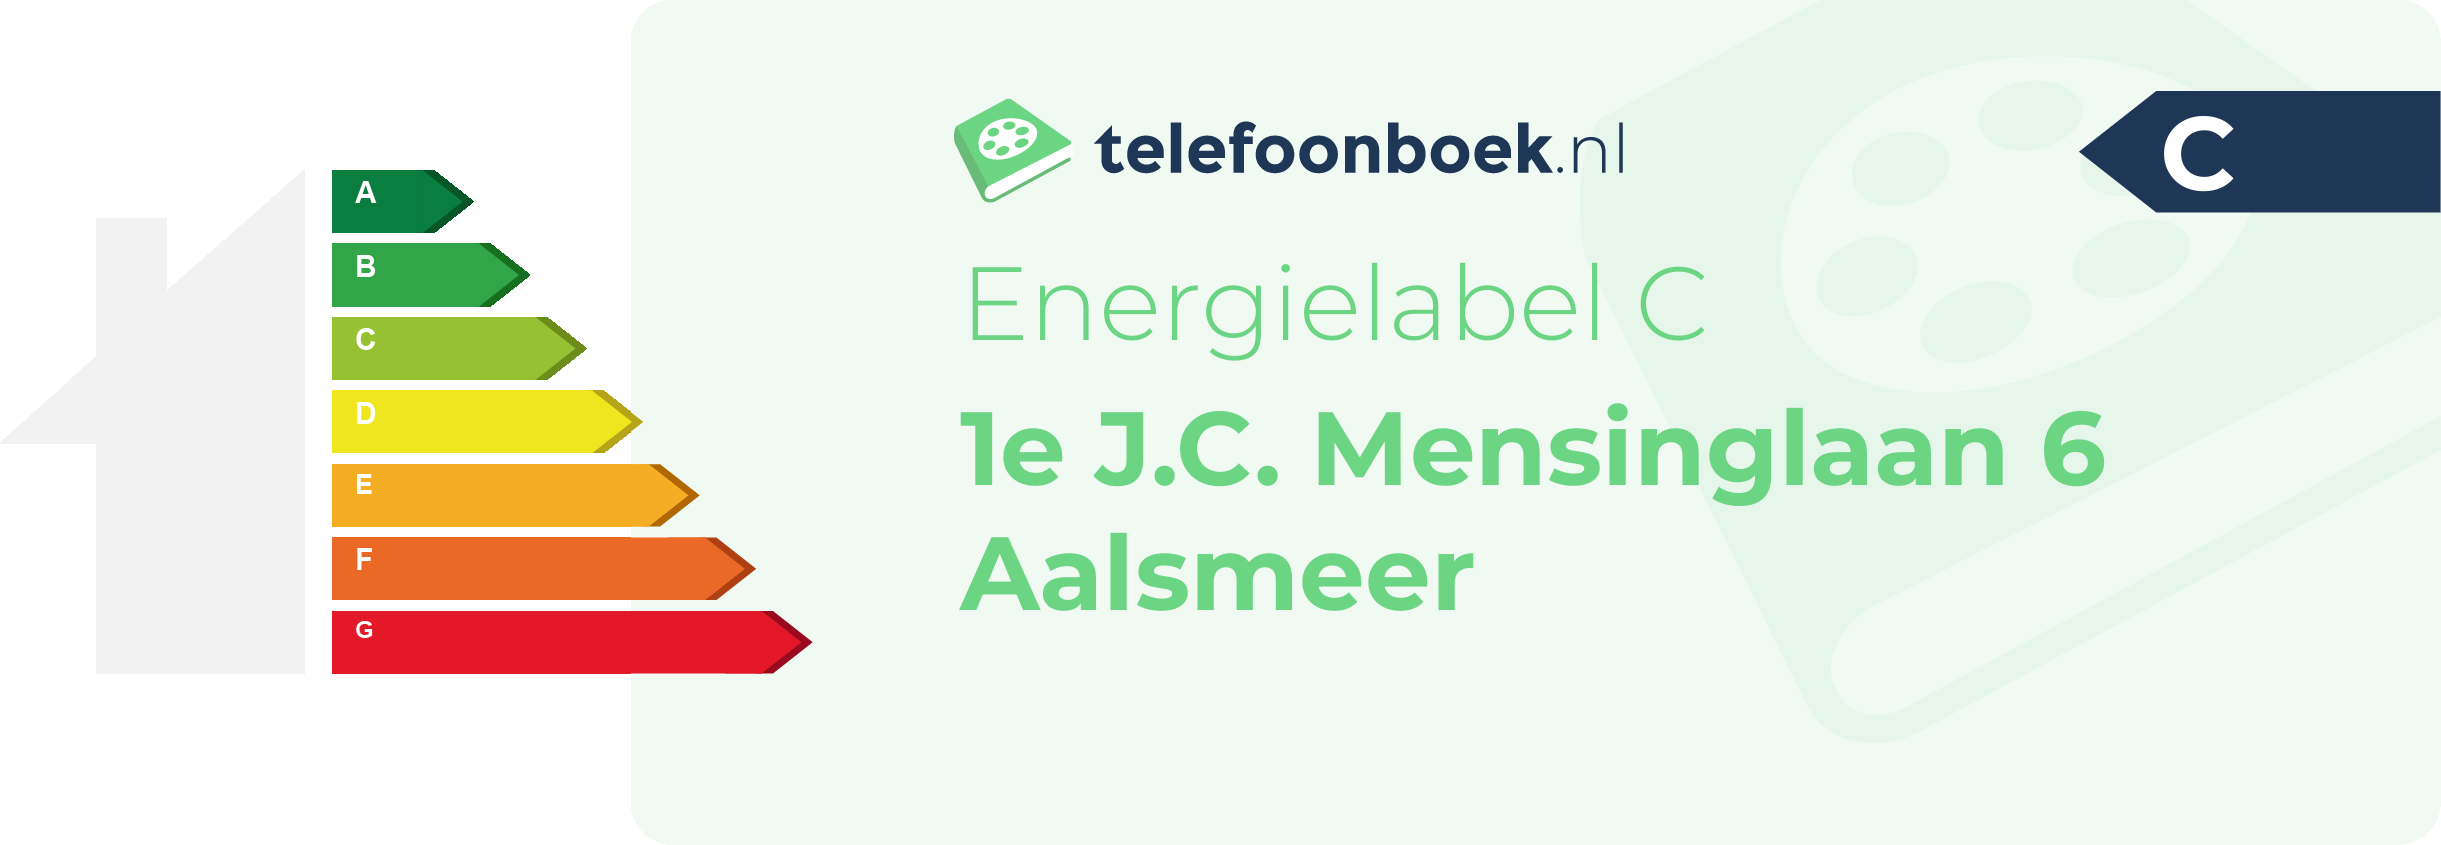 Energielabel 1e J.C. Mensinglaan 6 Aalsmeer